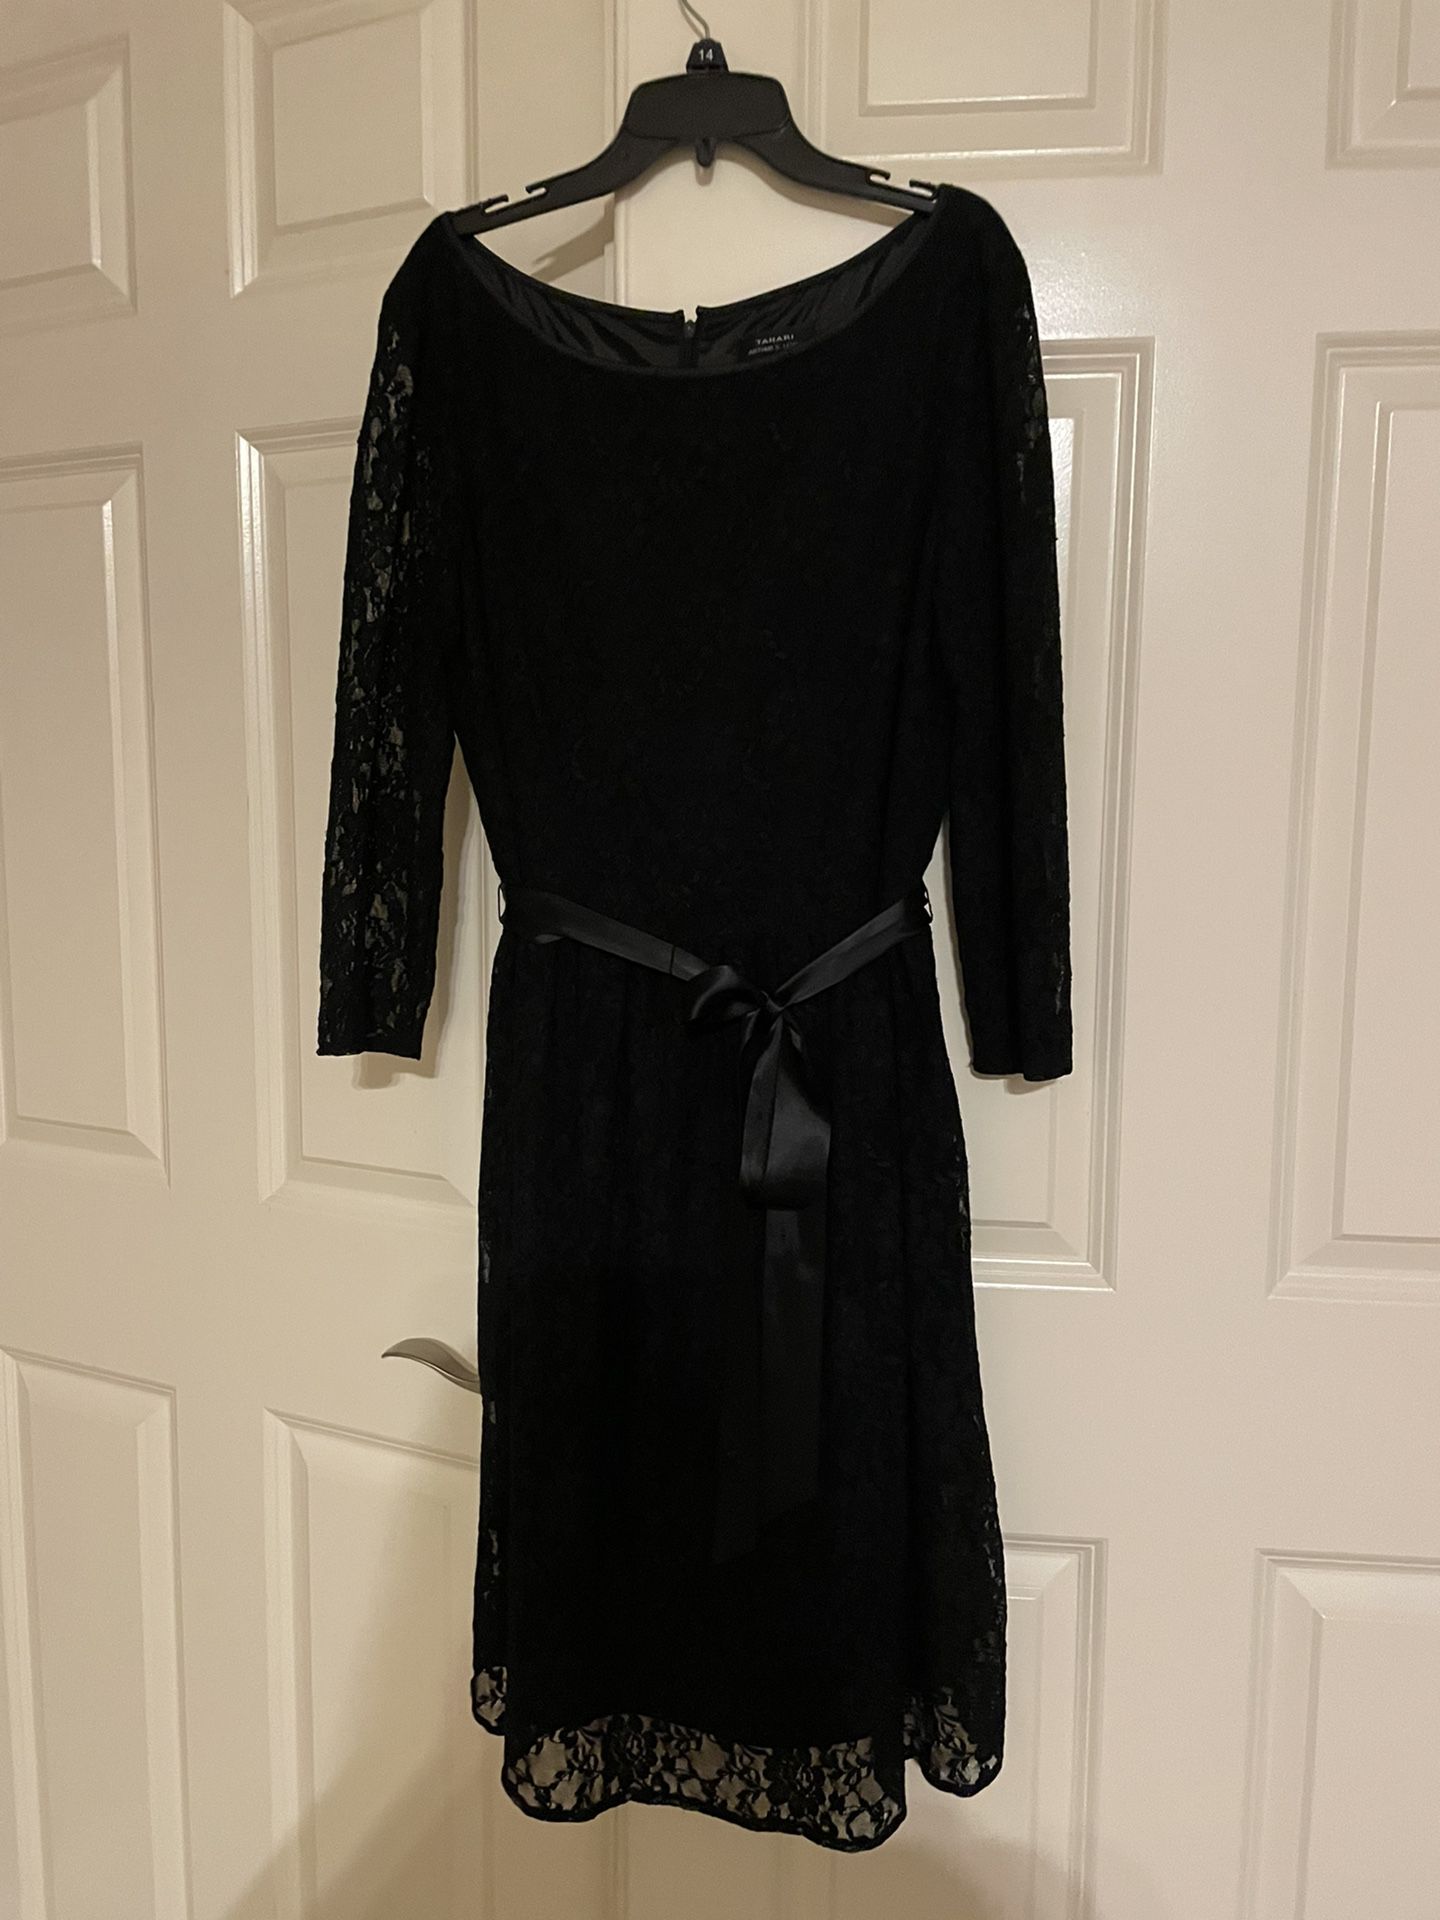 Tahari  Black Lace Dress Sz 14 with satin belt 